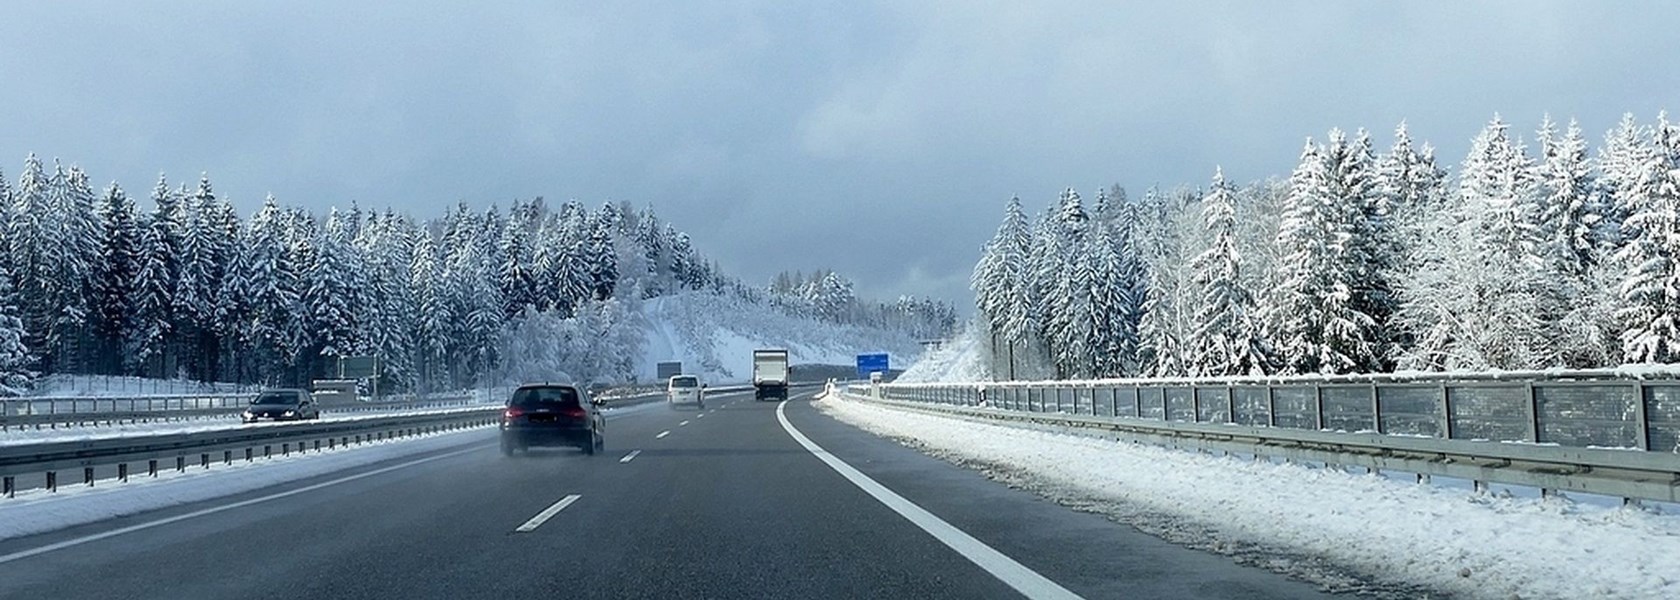 Bei Eis & Schnee: Tipps zur sicheren Fahrt im Winter – BMK INFOTHEK